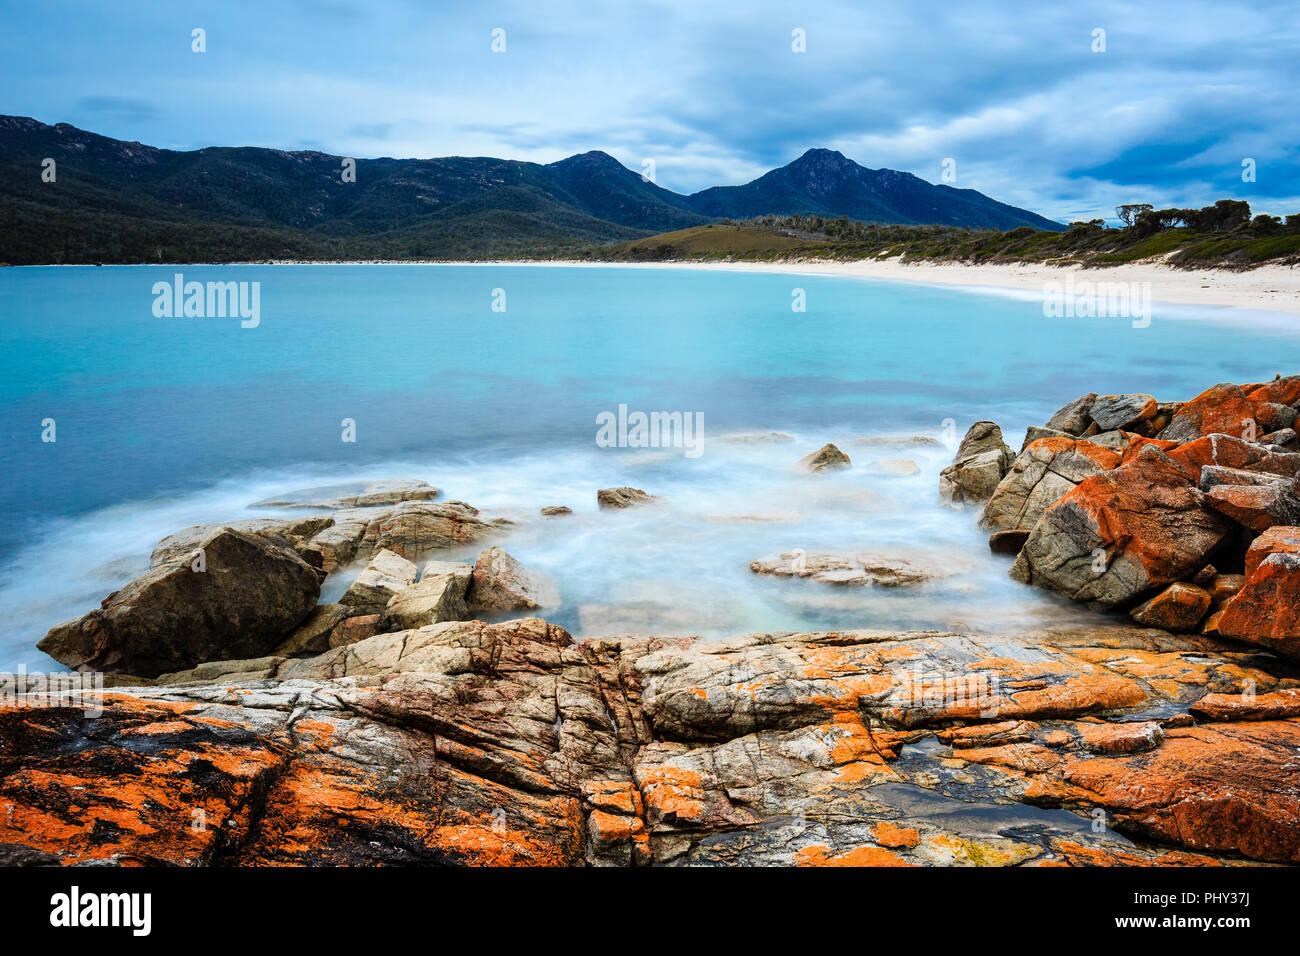 Tagsüber lange Belichtung Erfassung der Wineglass Bay im Freycinet National Park, Tasmanien, Australien, mit orangefarbenen Flechten auf Felsen im Vordergrund. Stockfoto